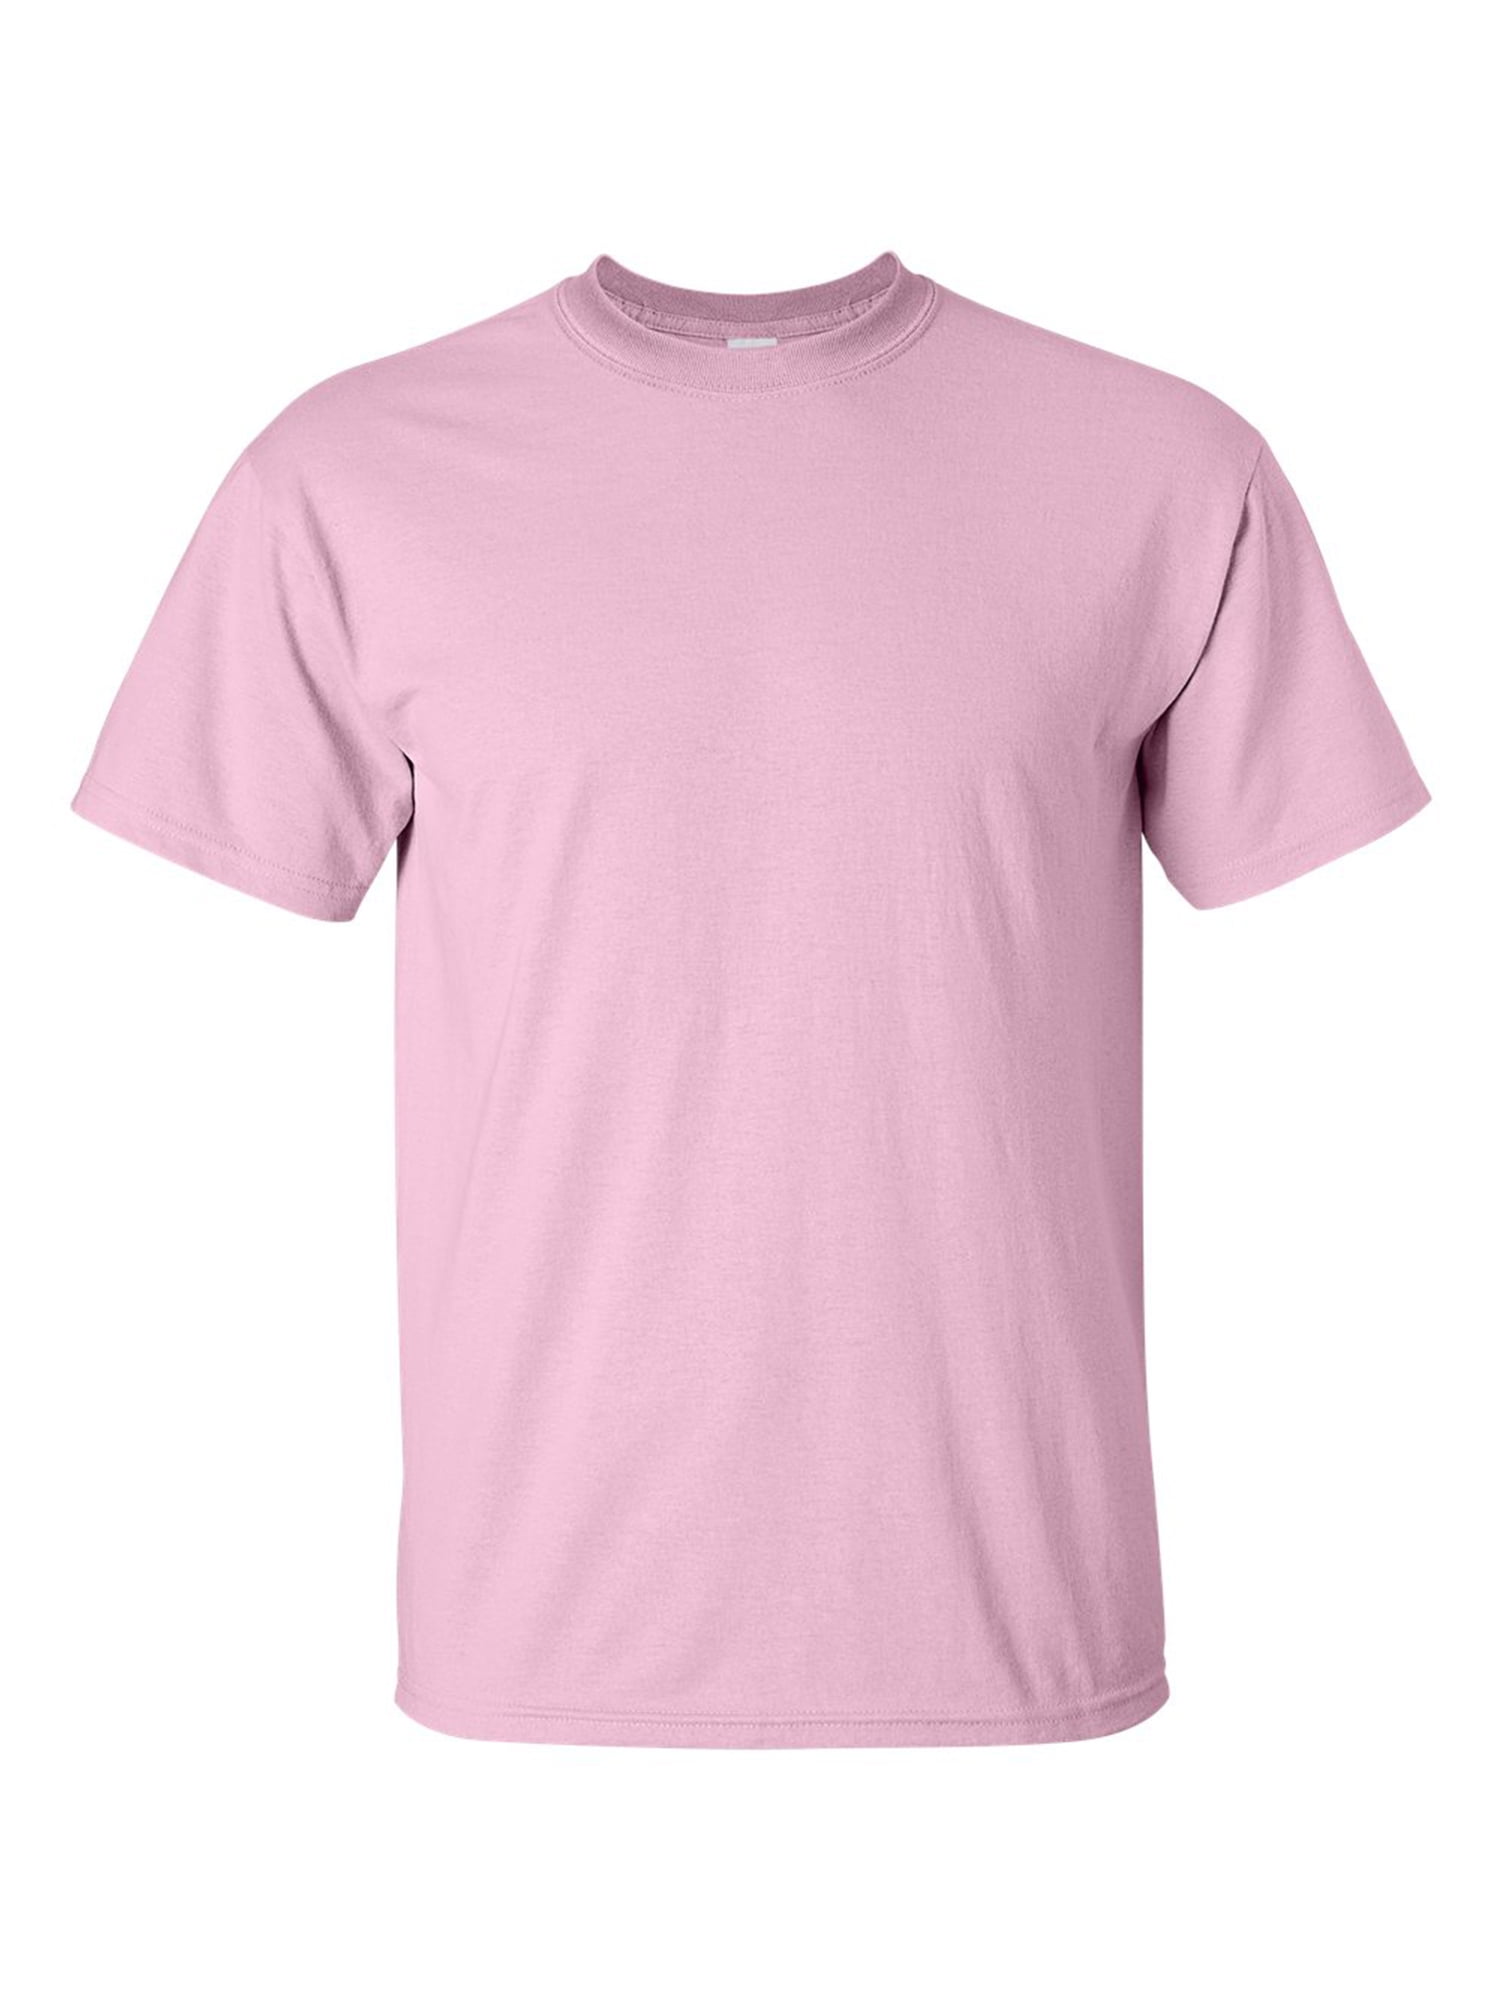 baby pink t shirt mens